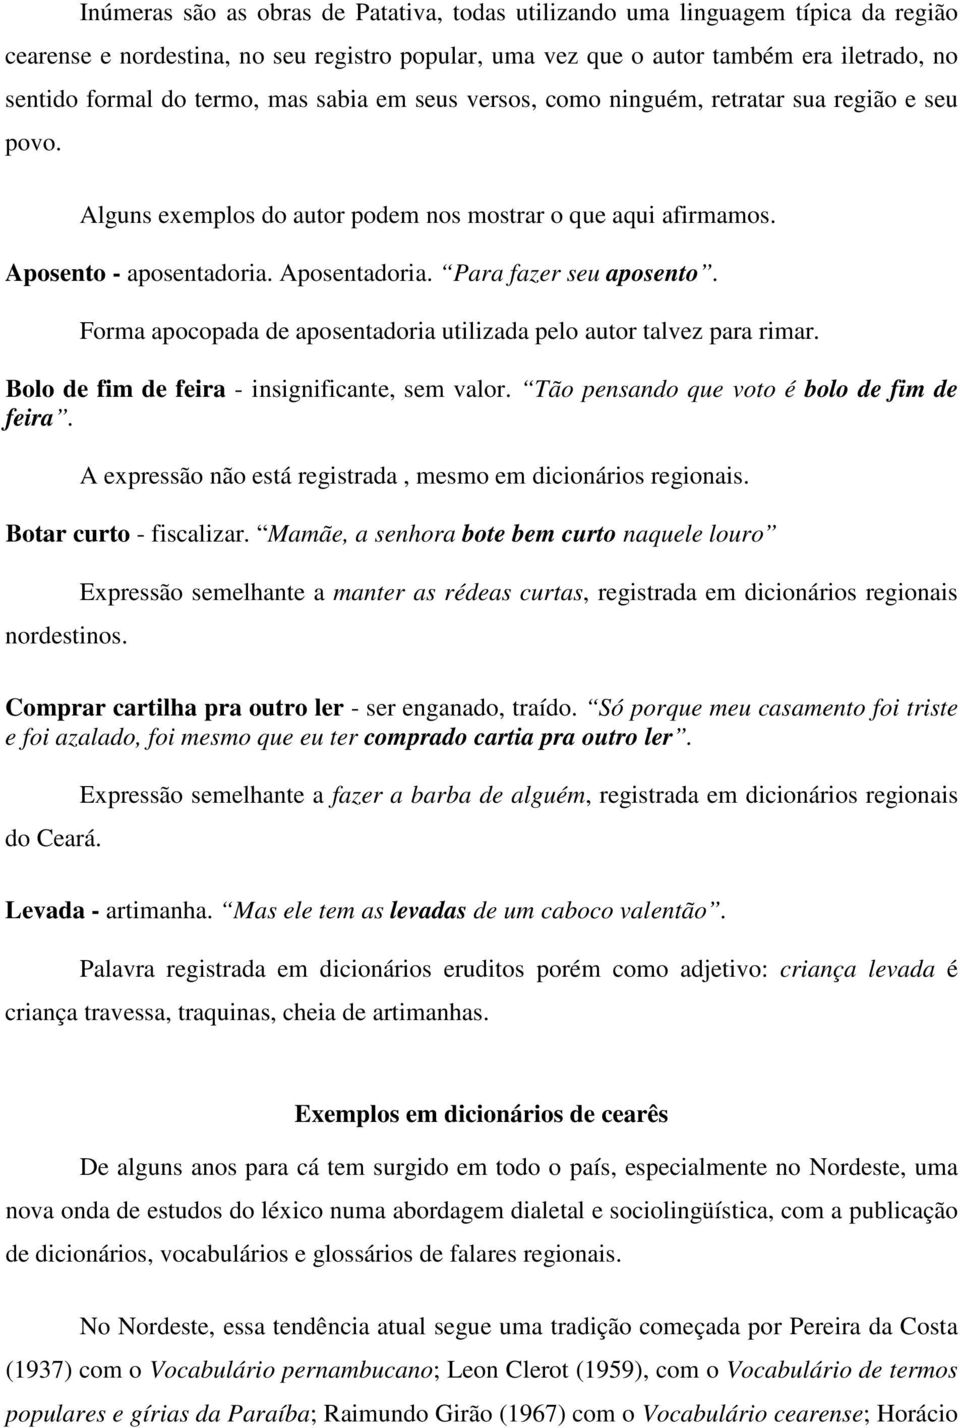 RELAÇÕES LÍNGUA SOCIEDADE E CULTURA NA LINGUAGEM POPULAR DO CEARÁ - PDF ...